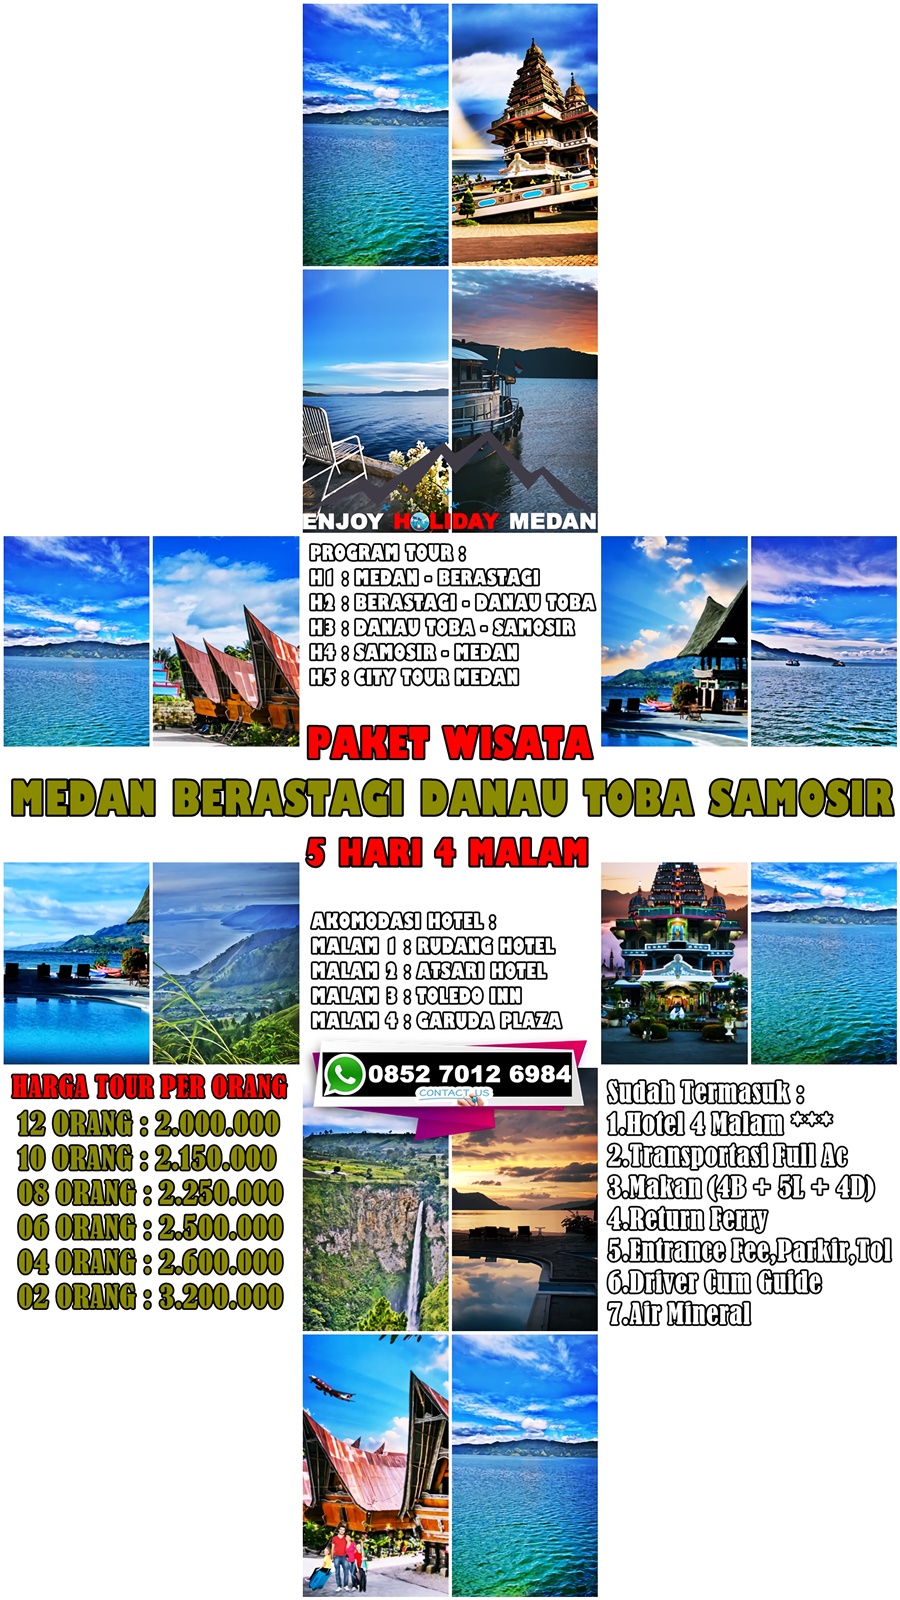 5D4N Medan Lake Toba Tour Package